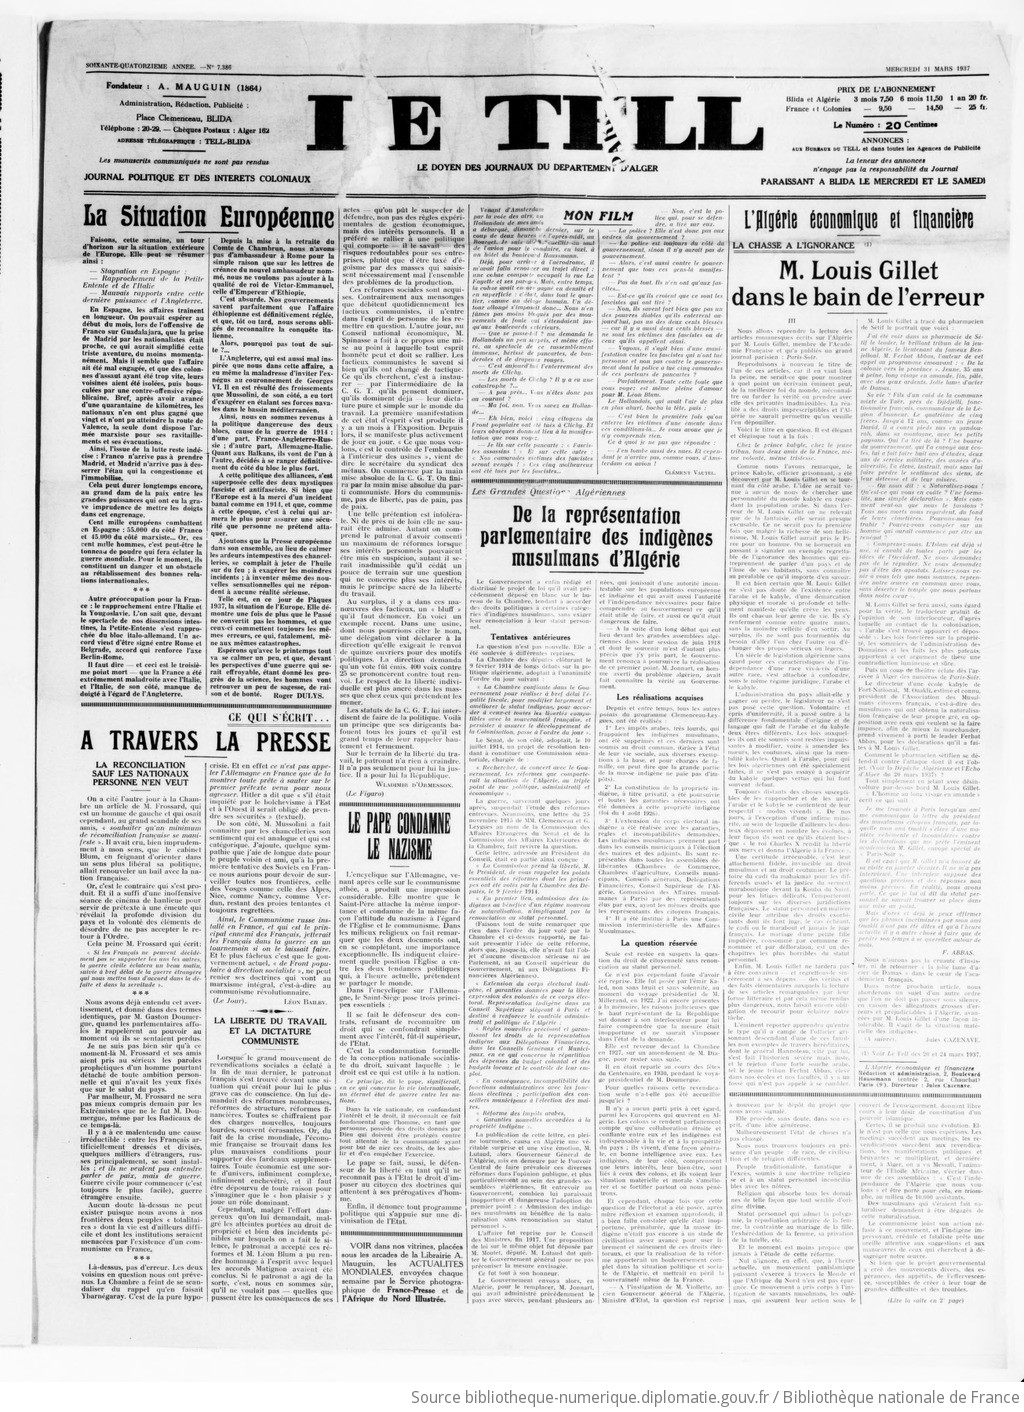 Le Tell : journal des intérêts coloniaux, 1937-03-31